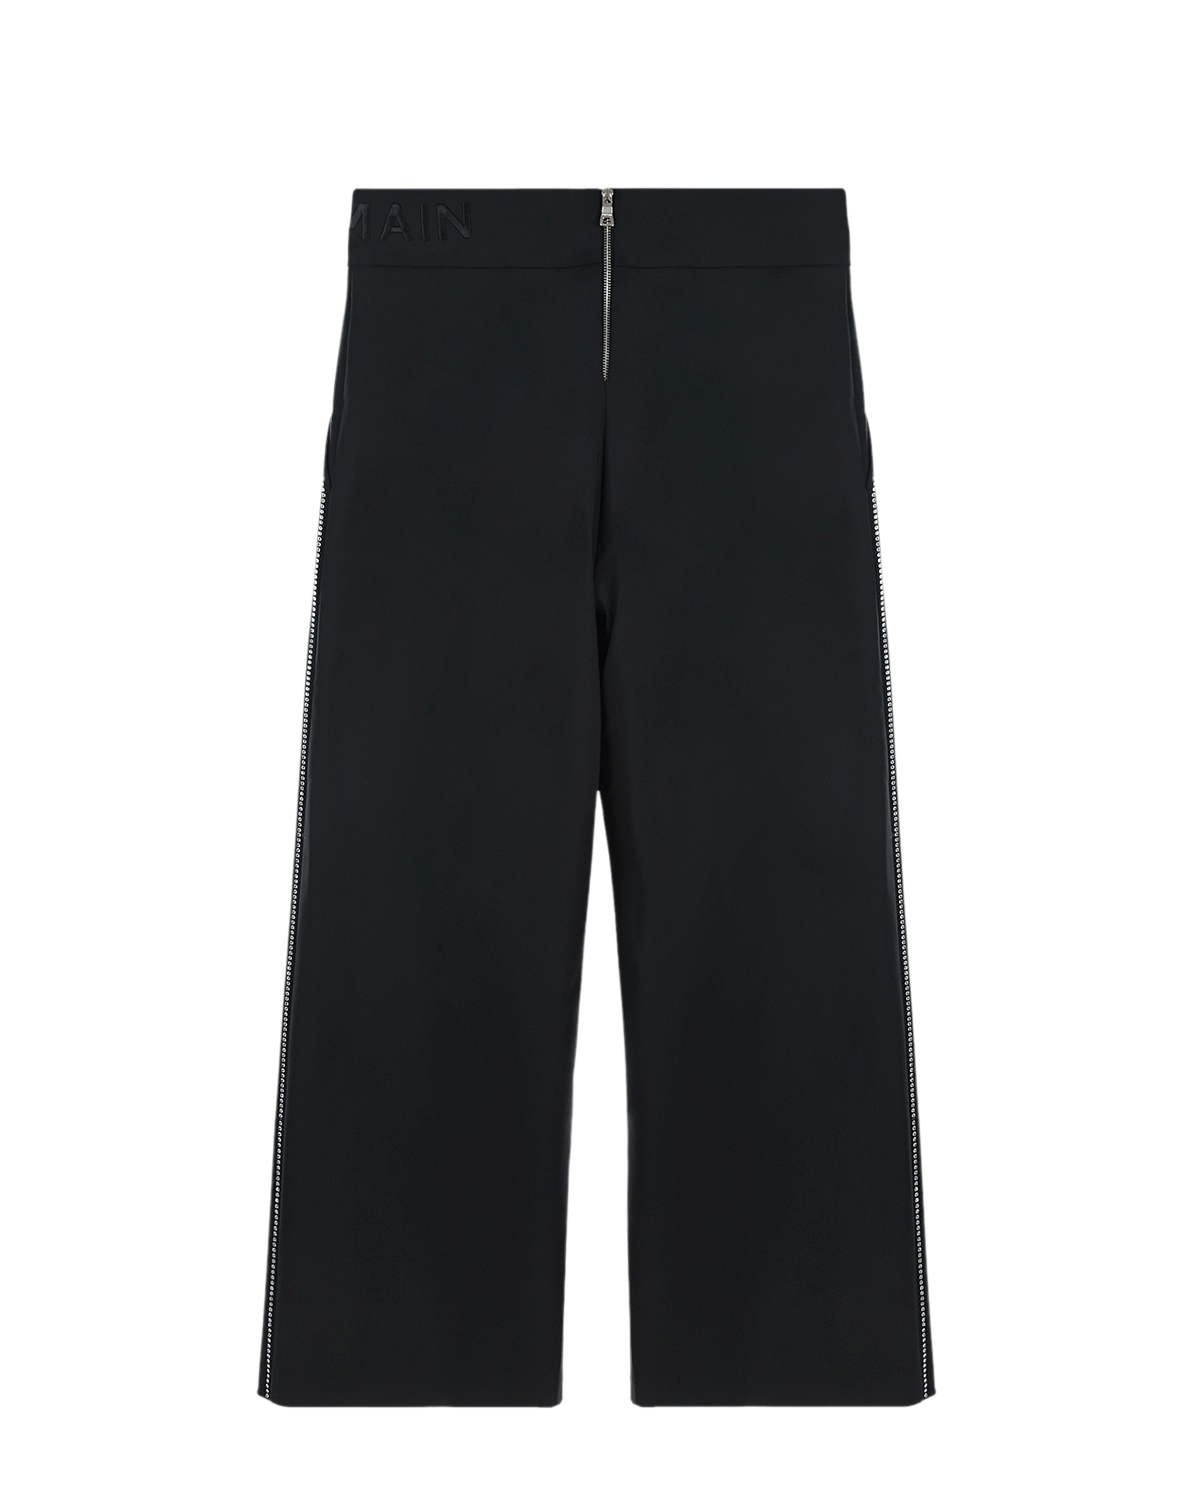 Шерстяные брюки с лампасами из стразов Balmain детские, размер 152, цвет черный - фото 2